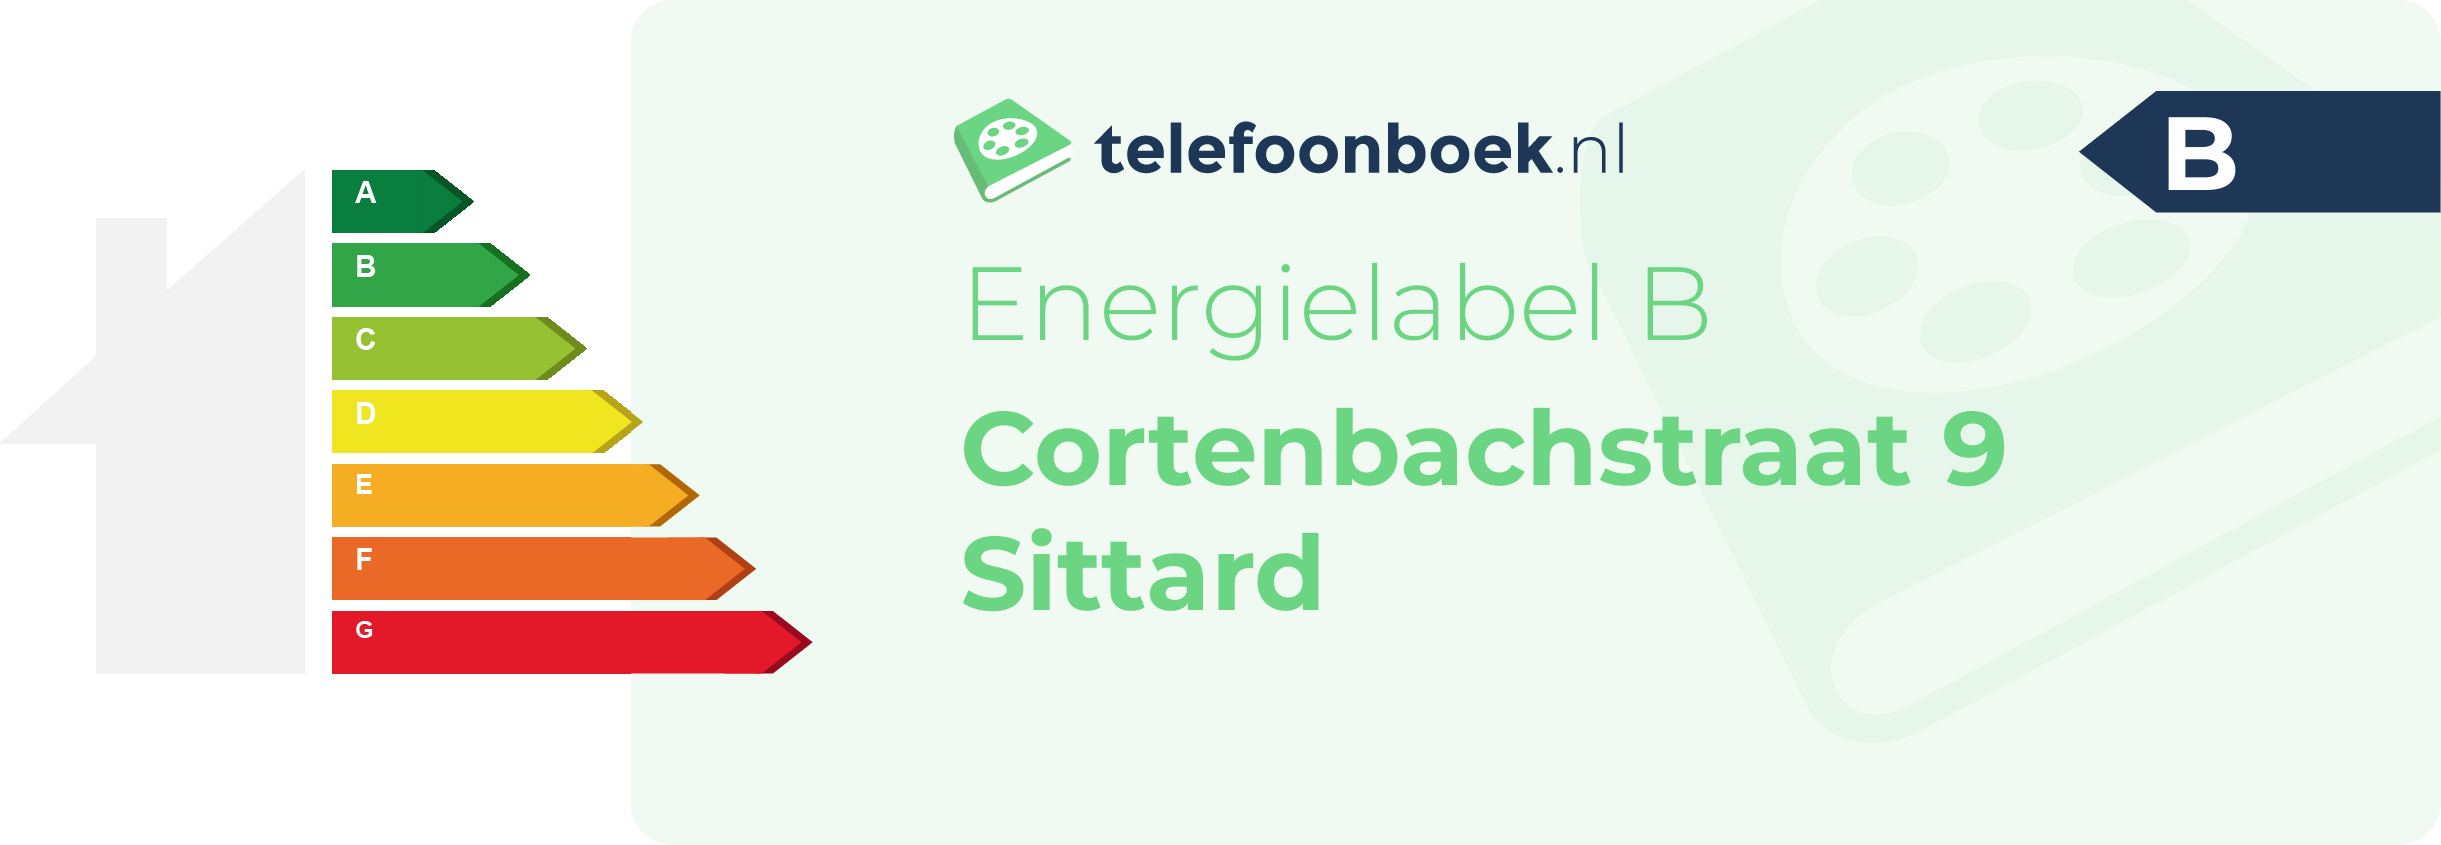 Energielabel Cortenbachstraat 9 Sittard